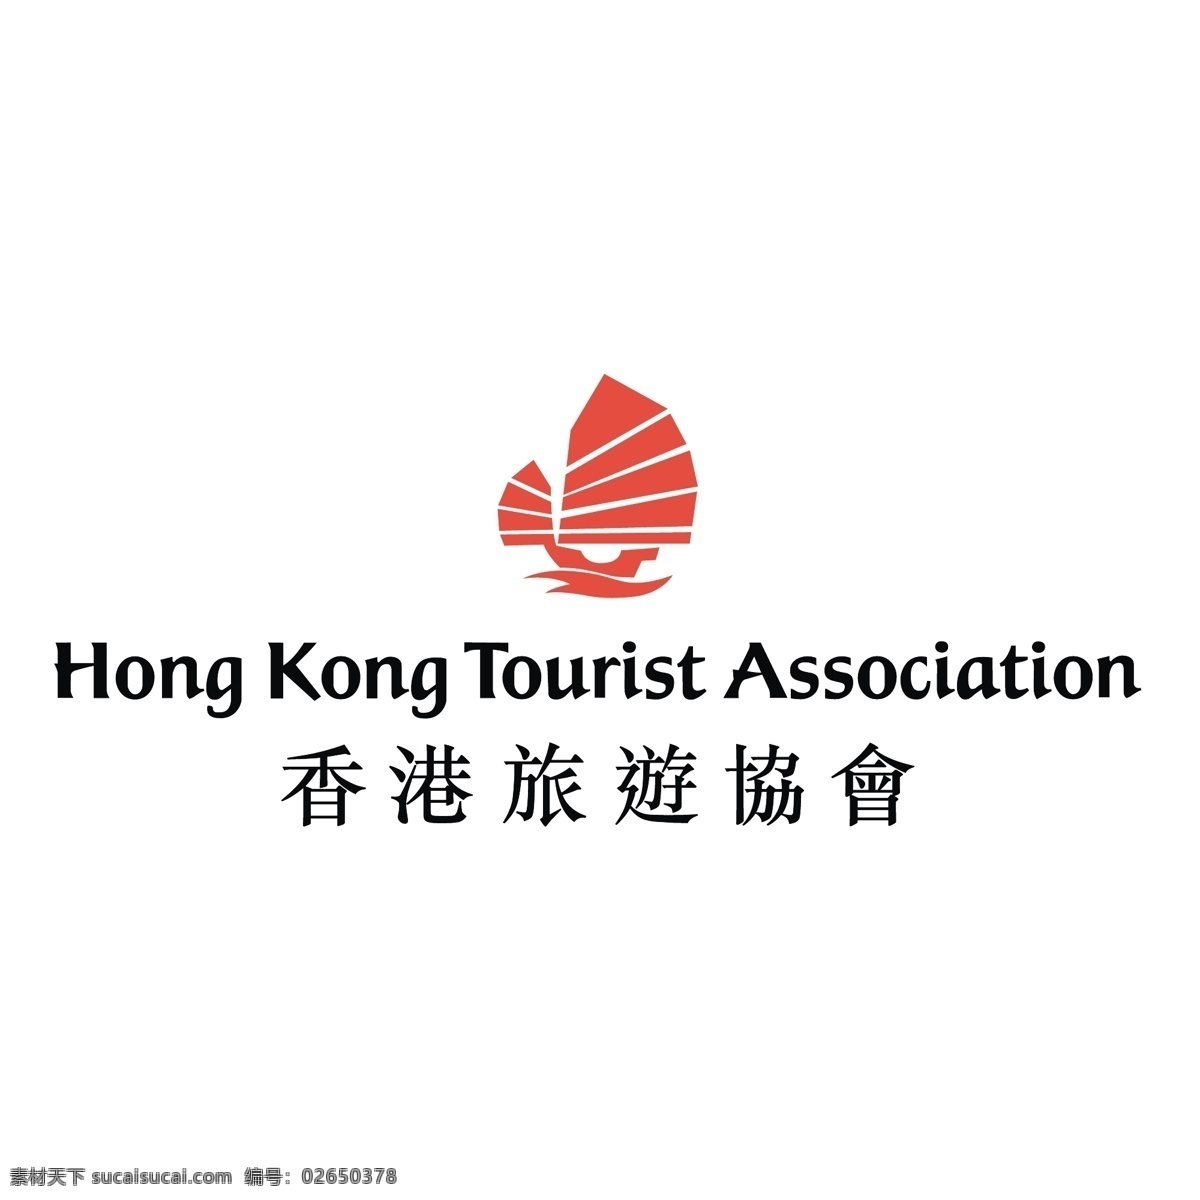 香港旅游协会 免费 标志 自由 psd源文件 logo设计